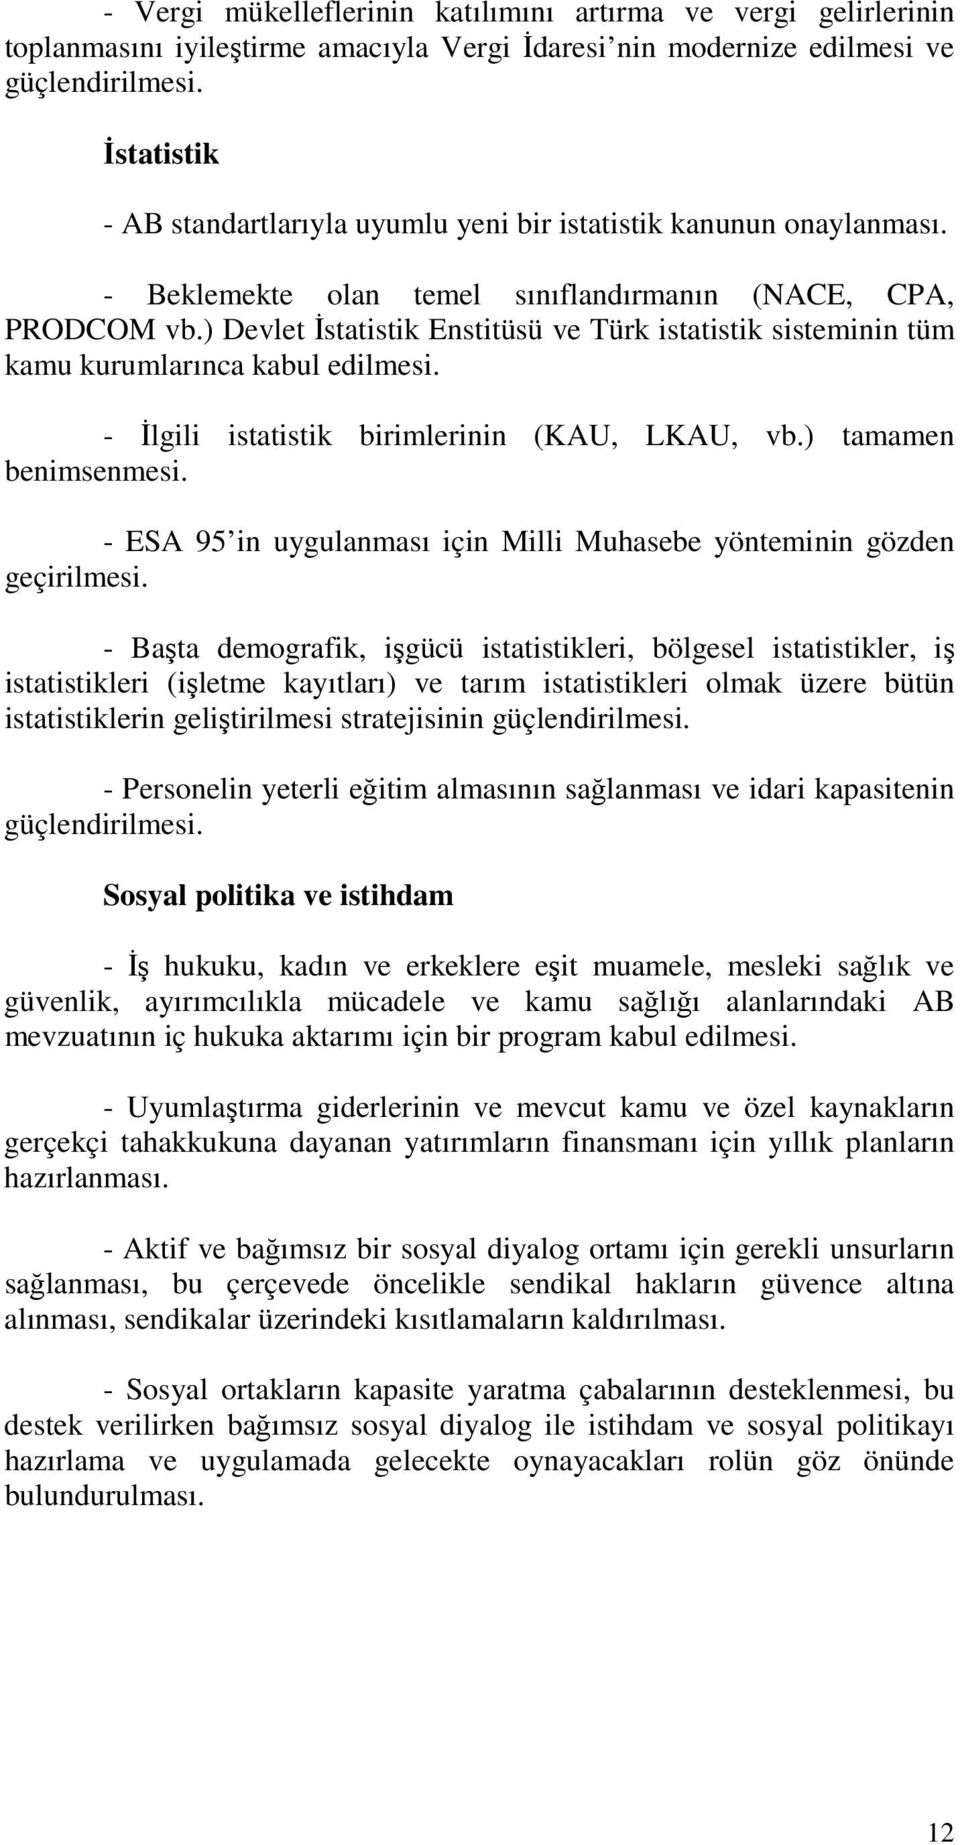 ) Devlet Đstatistik Enstitüsü ve Türk istatistik sisteminin tüm kamu kurumlarınca kabul edilmesi. - Đlgili istatistik birimlerinin (KAU, LKAU, vb.) tamamen benimsenmesi.